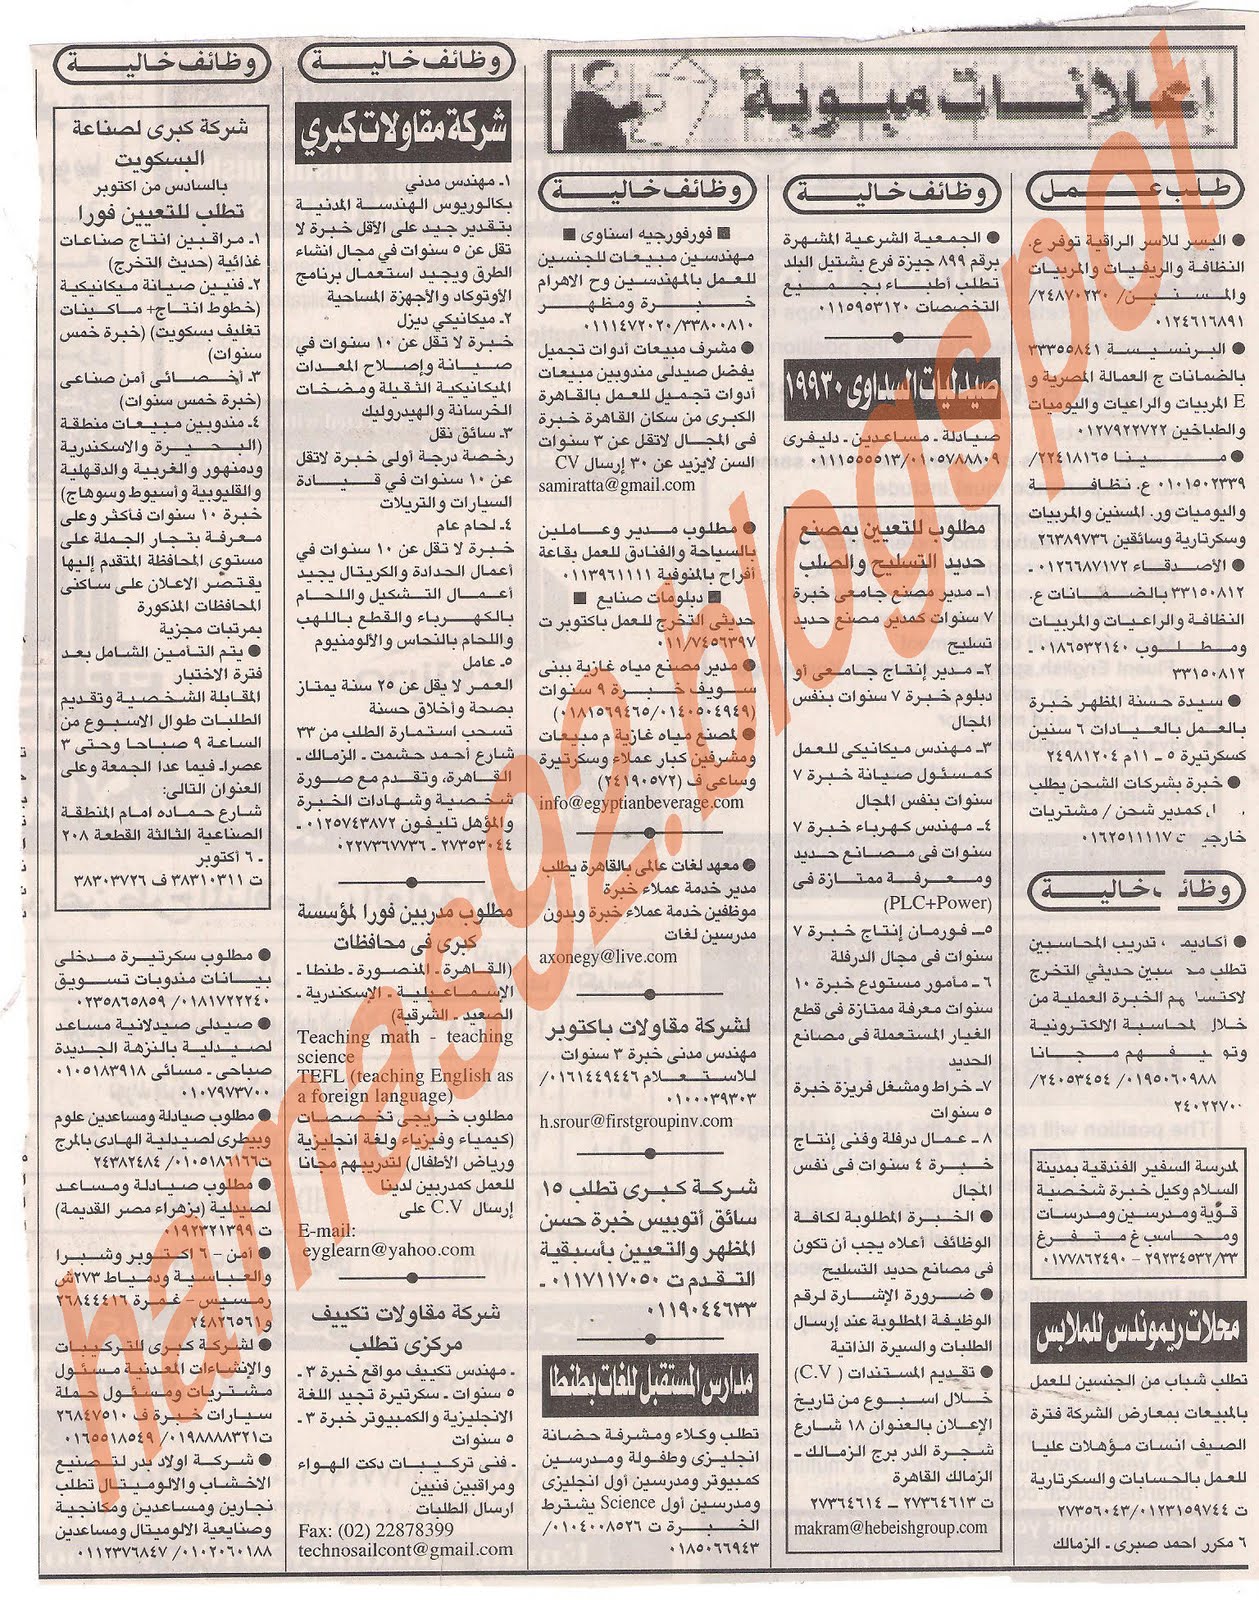 وظائف جريدة اهرام الجمعة 8 يوليو 2011 Picture+006